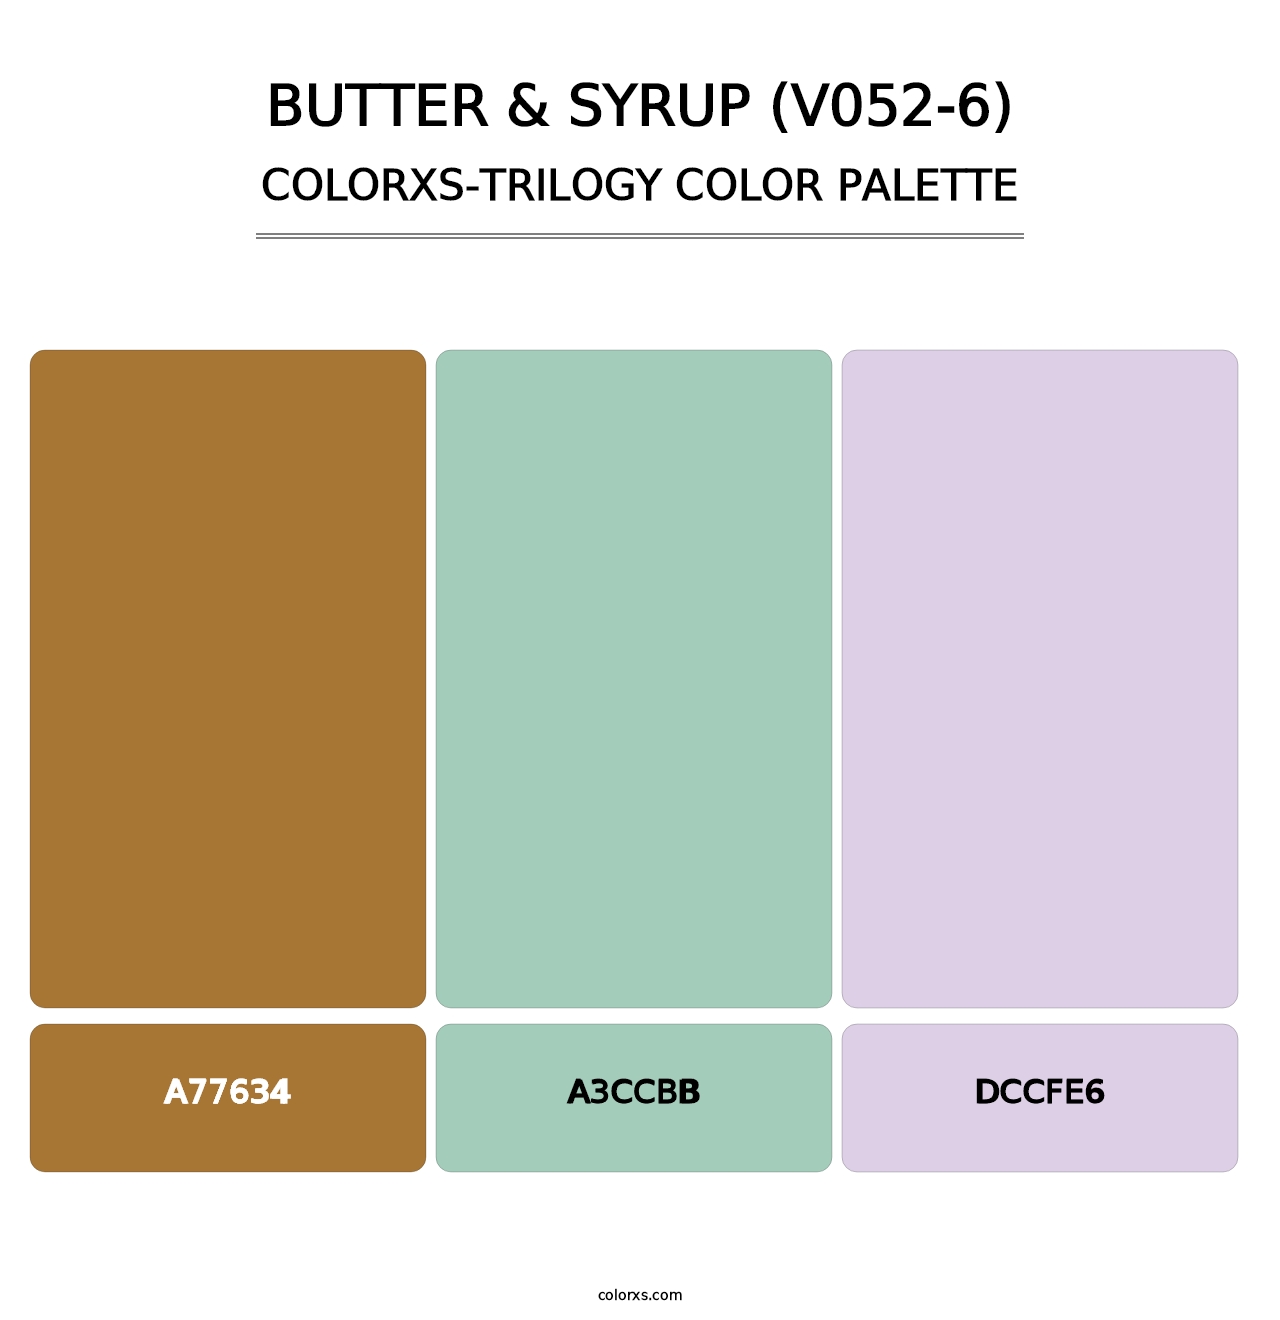 Butter & Syrup (V052-6) - Colorxs Trilogy Palette